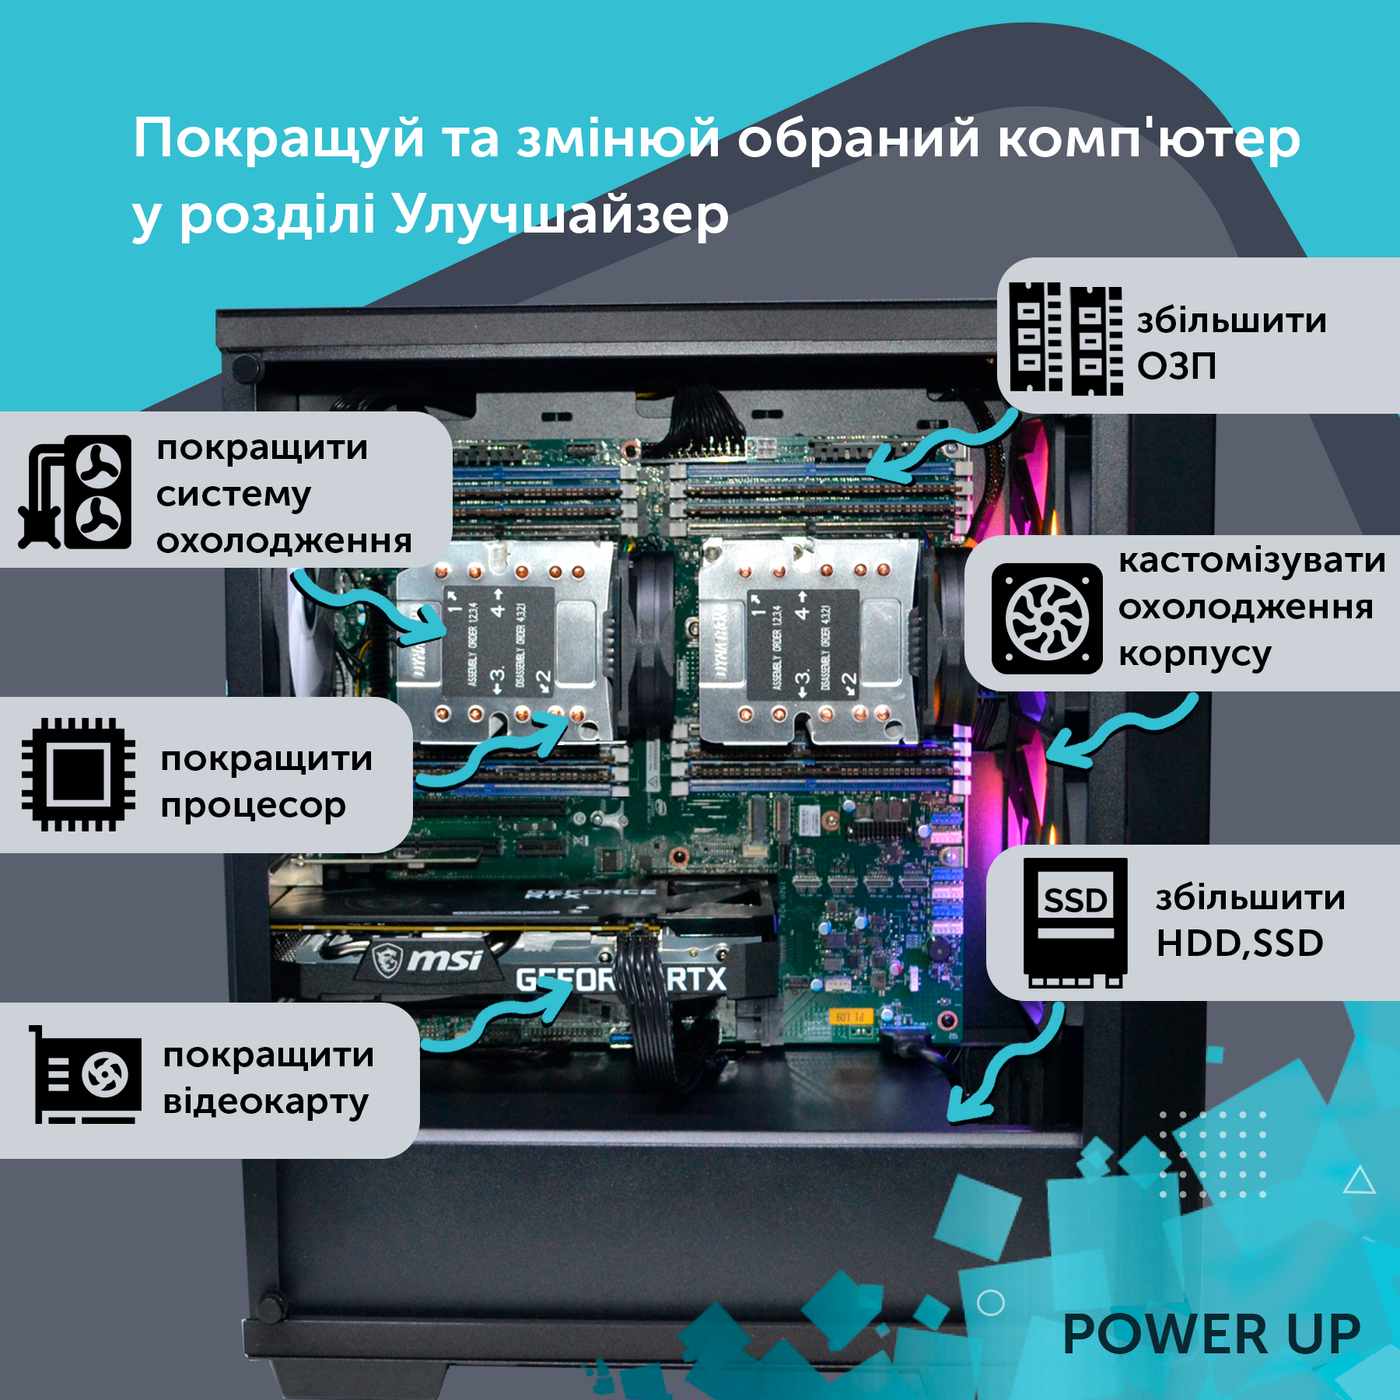 Двопроцесорна робоча станція PowerUp #410 Xeon E5 2699 v4 x2/64 GB/SSD 512GB/GeForce RTX 4060Ti 8GB